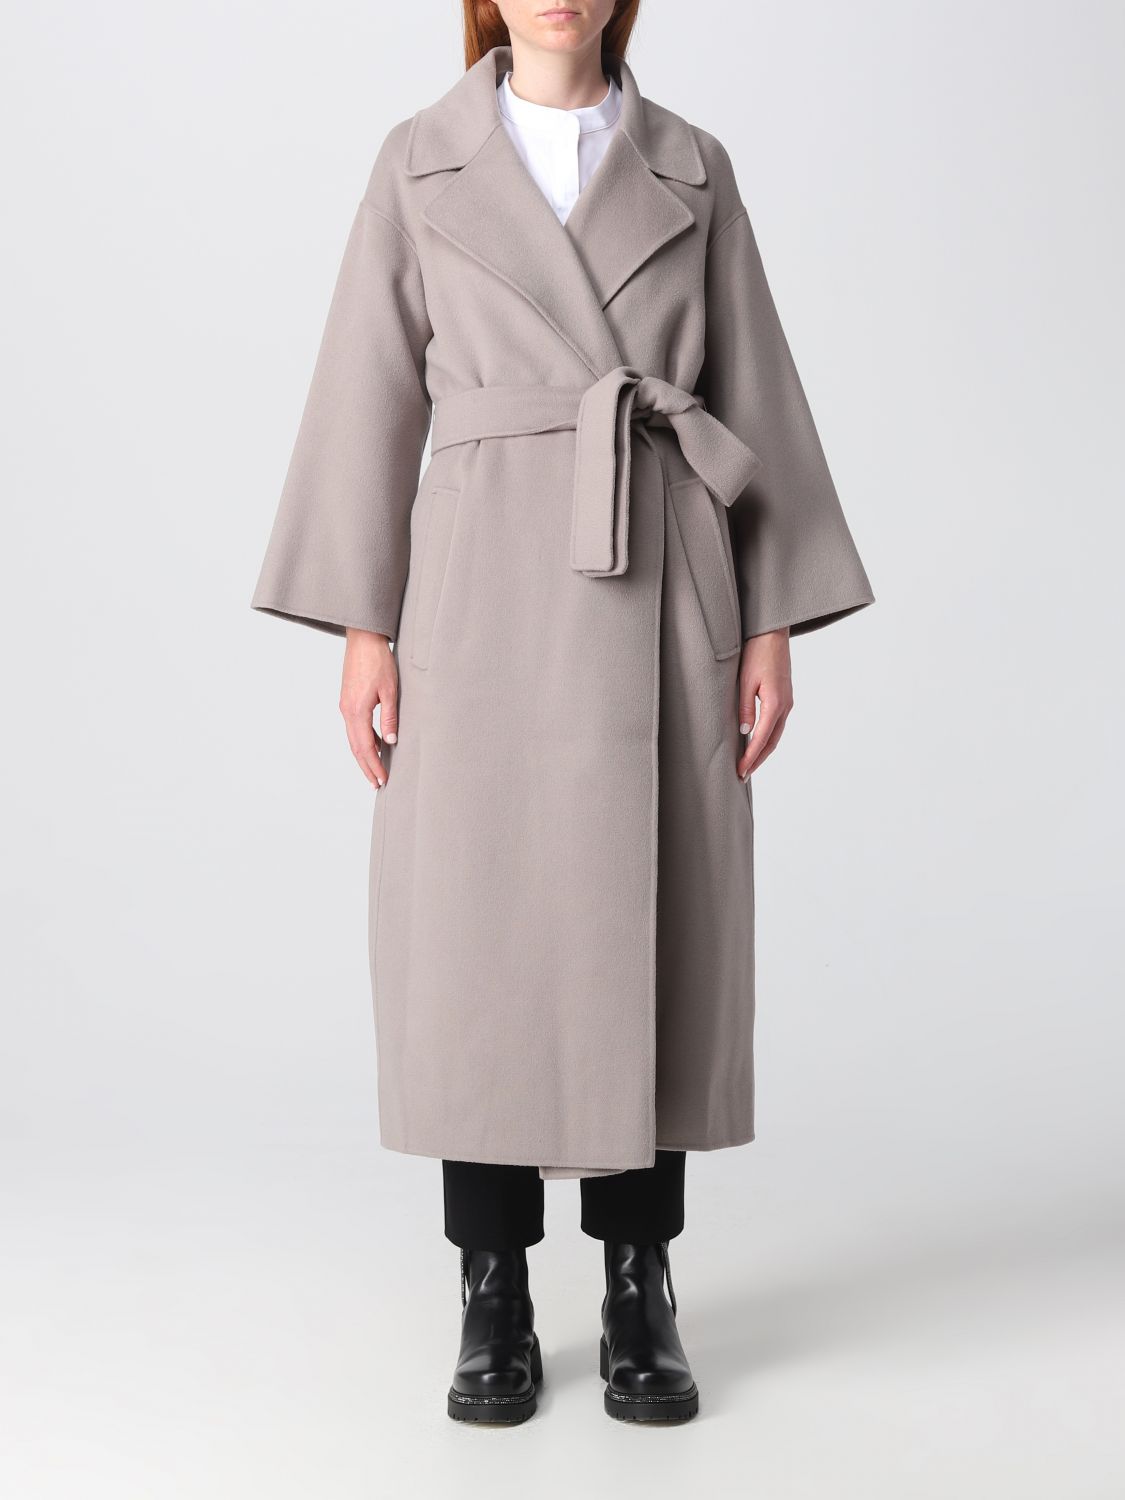 S MAX MARA: Venice coat in wool - Grey | S Max Mara coat 2390161039600 ...